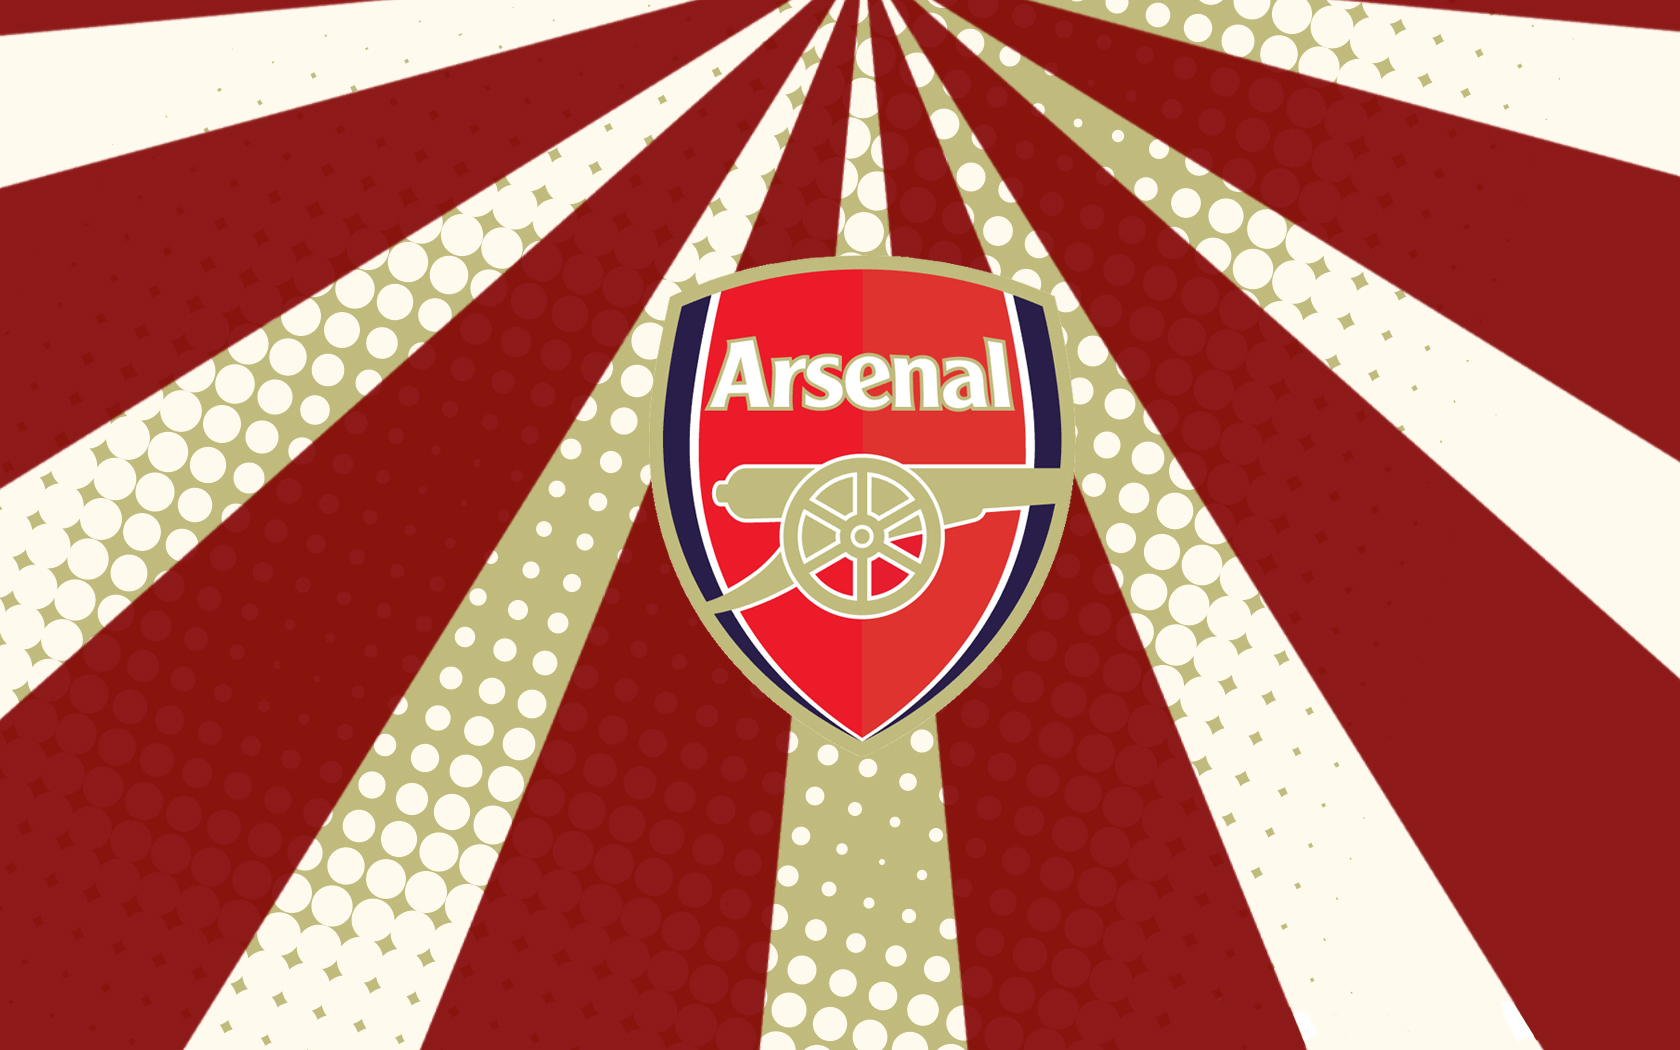 Arsenal Wallpaper - Arsenal Android Wallpaper Hd - HD Wallpaper 